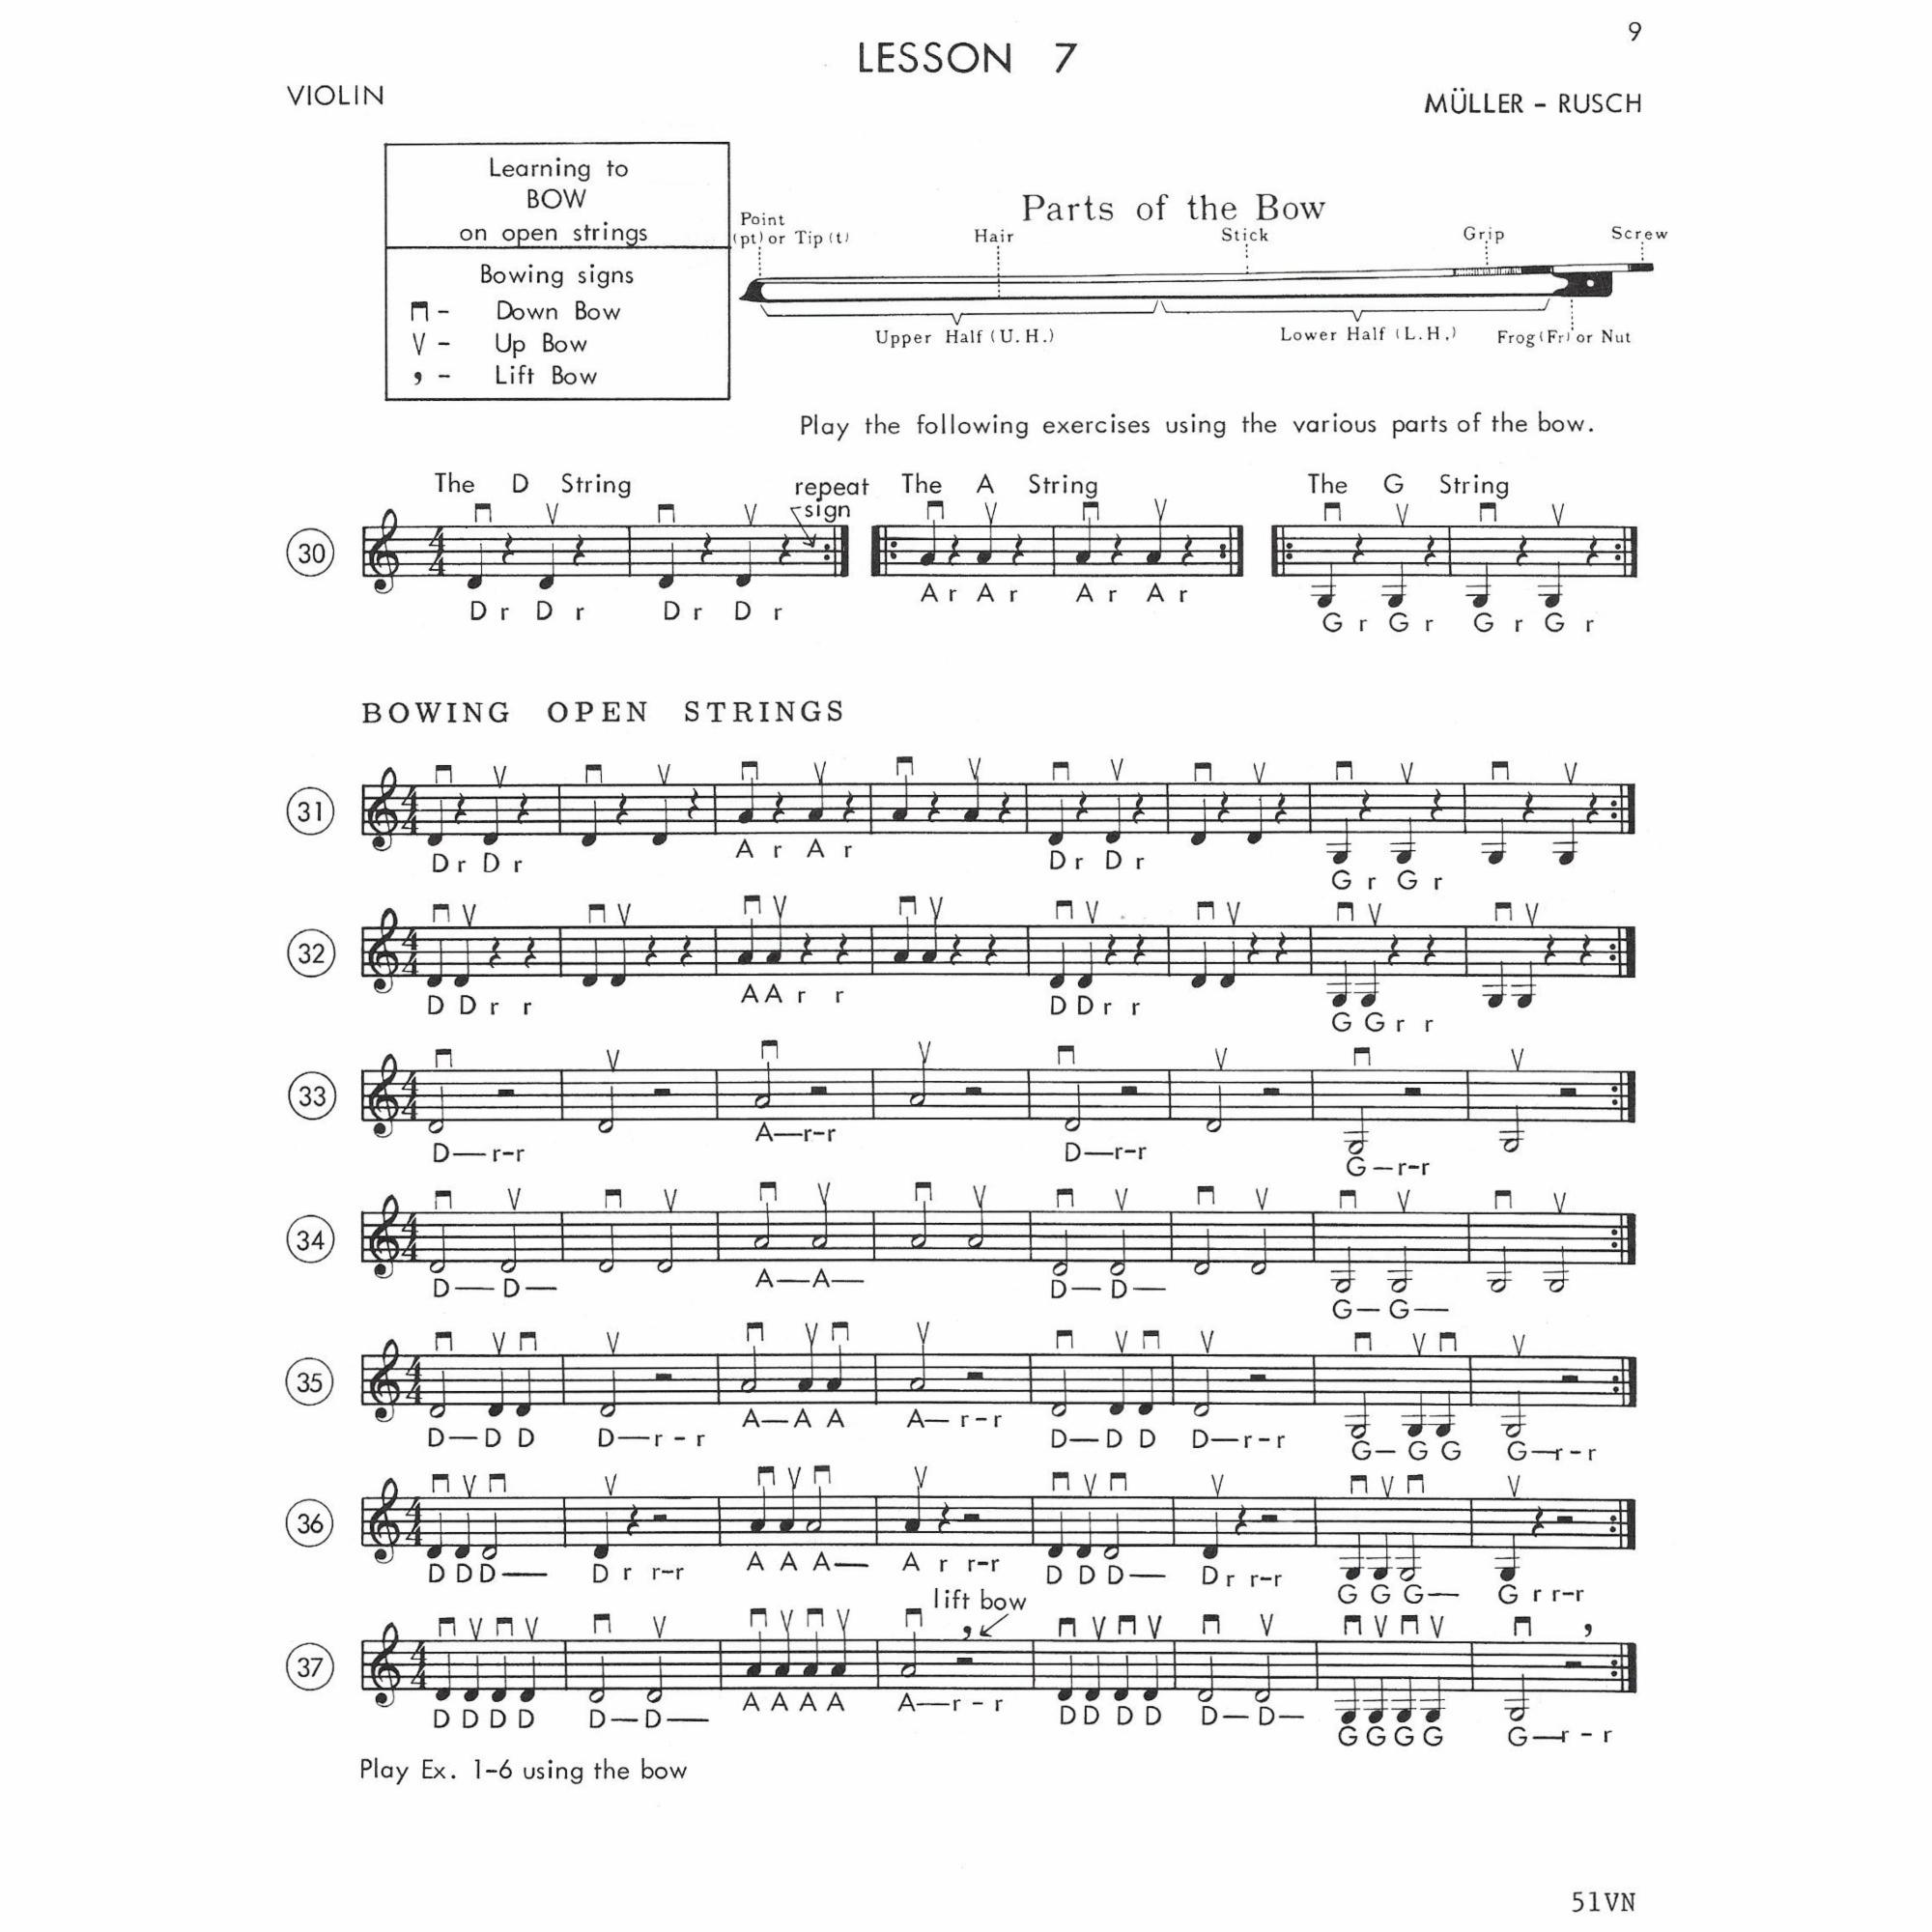 Sample: Violin (Pg. 9)